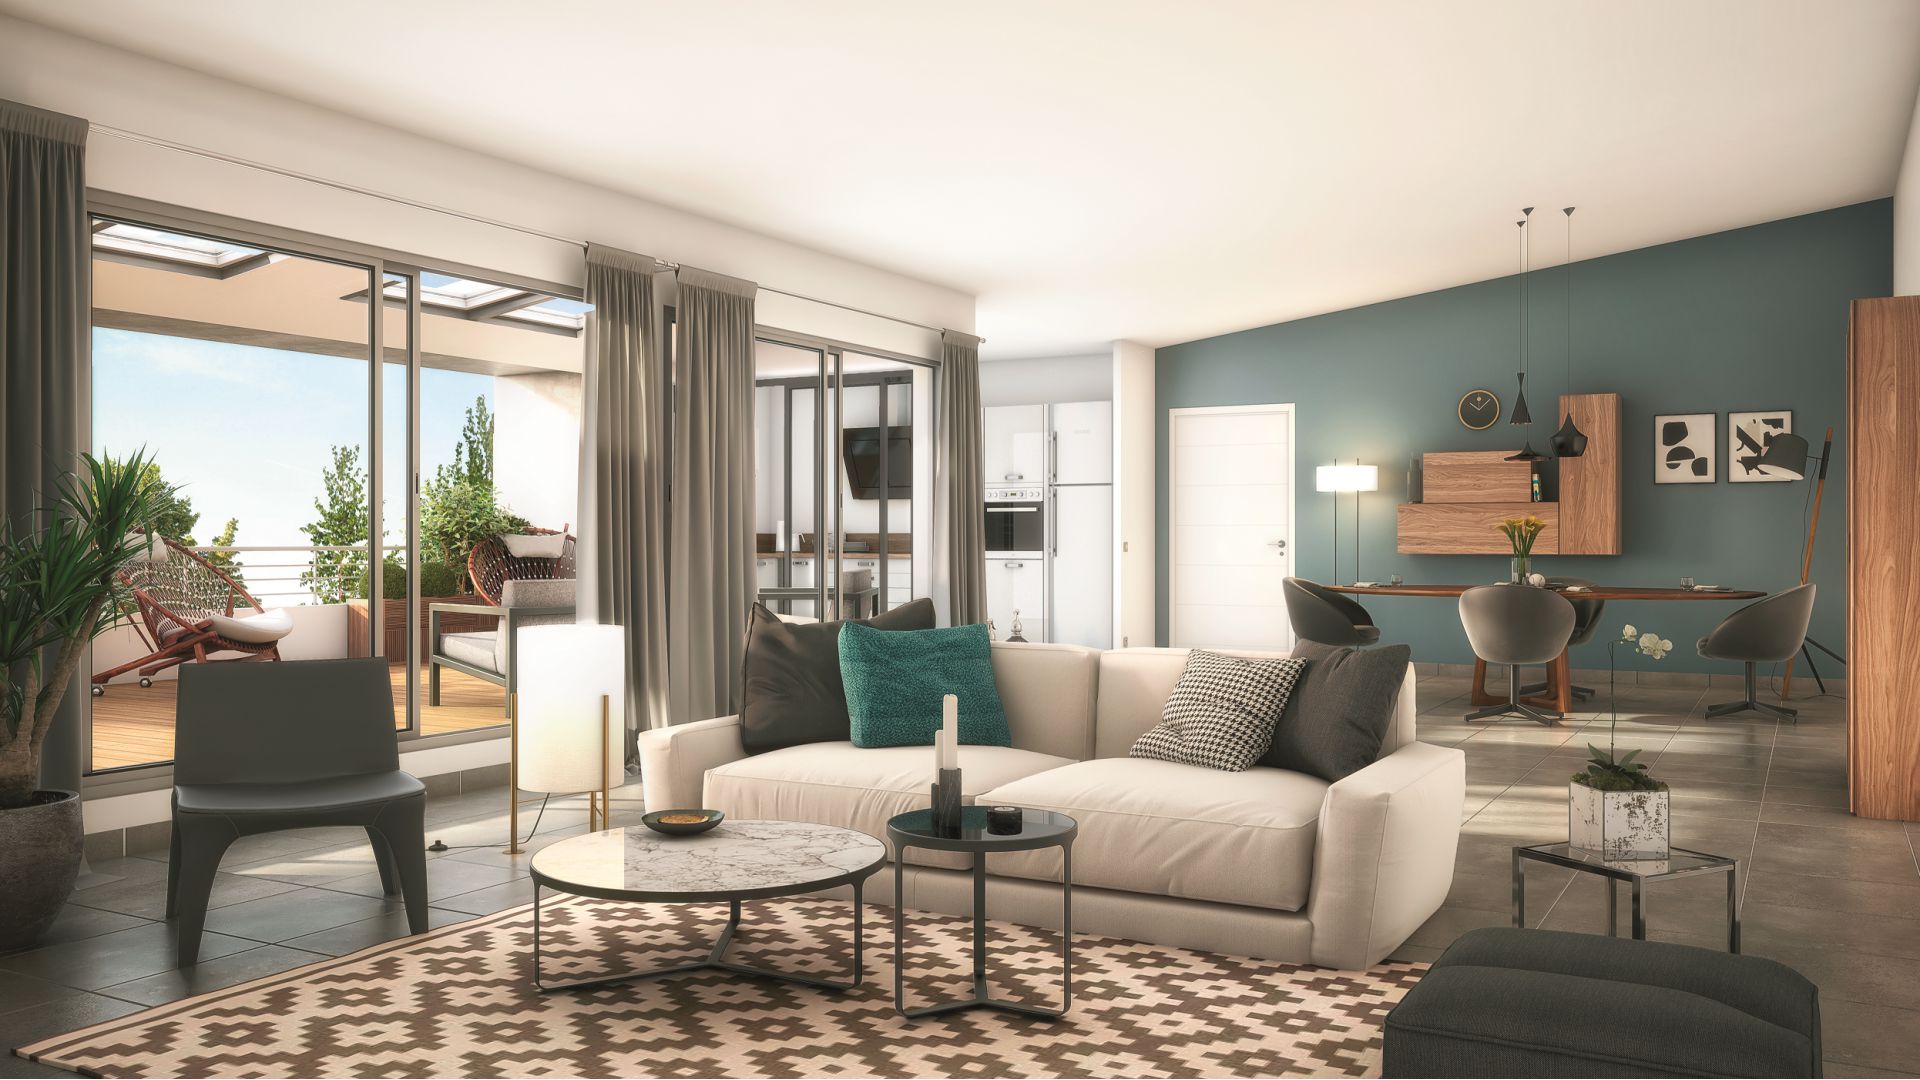 Greencity Immobilier - Résidence Carré Flavia - Toulouse 31400 - appartements neufs du T2 au T4 - vue intérieure